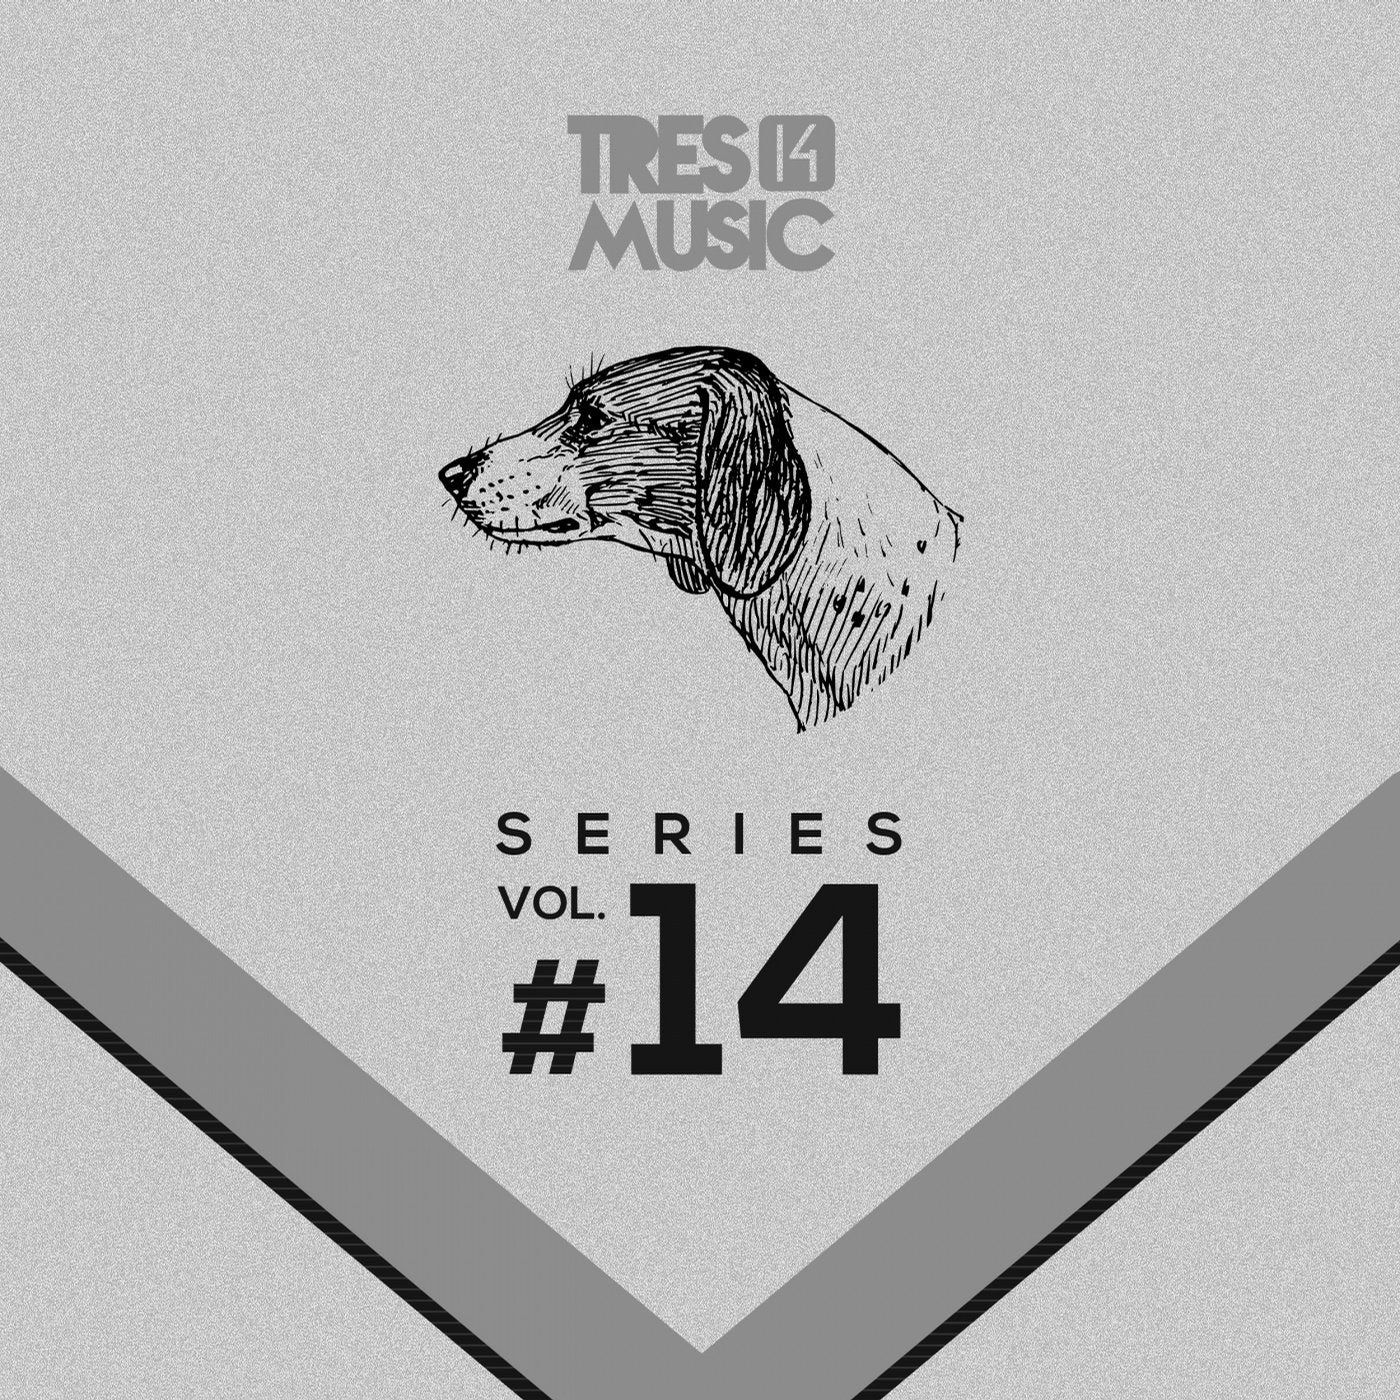 Tres 14 Series Vol. 14